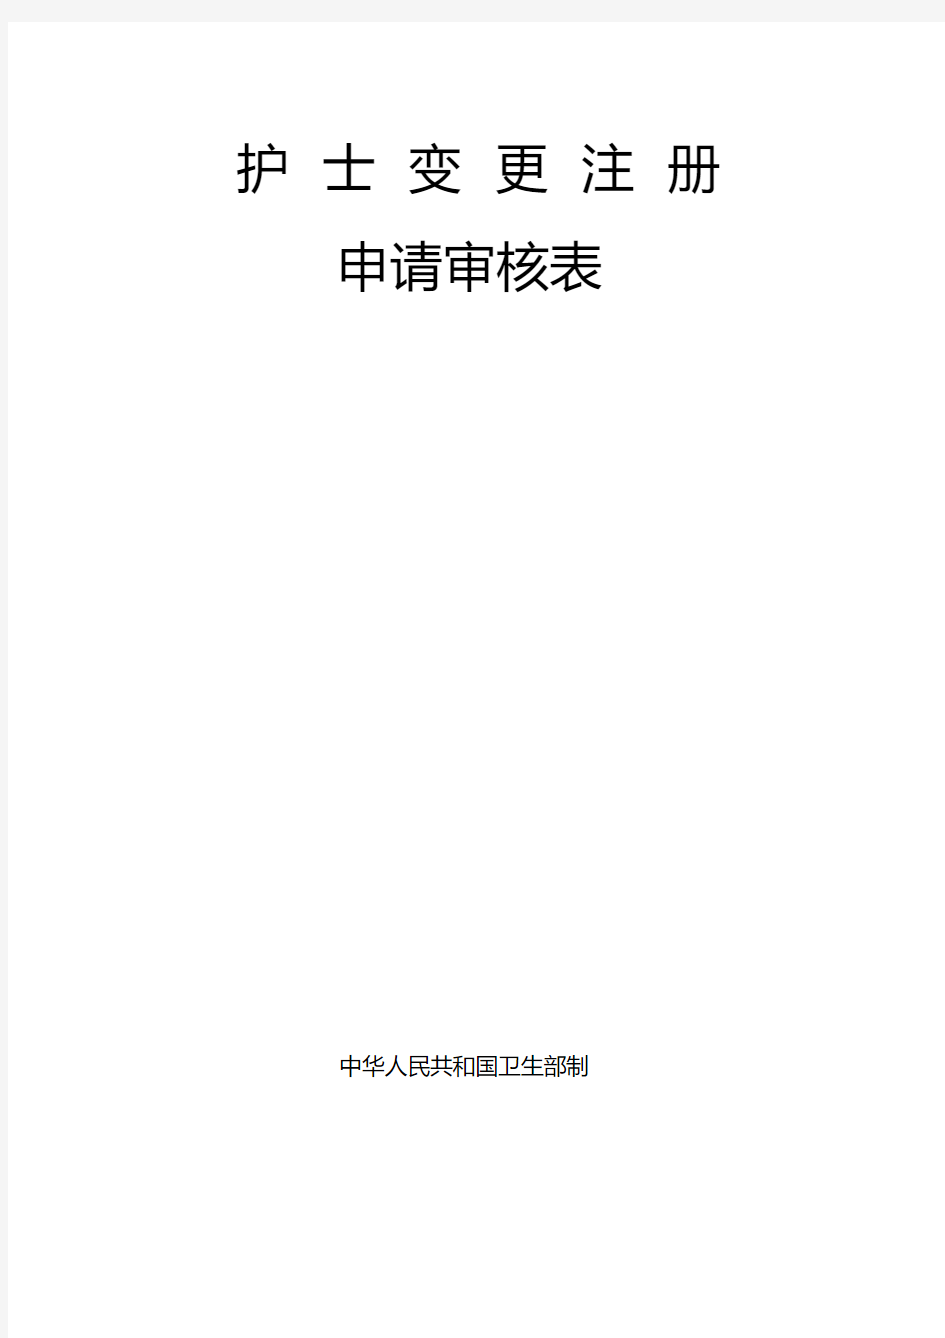 护士变更注册申请审核表完整版.pdf